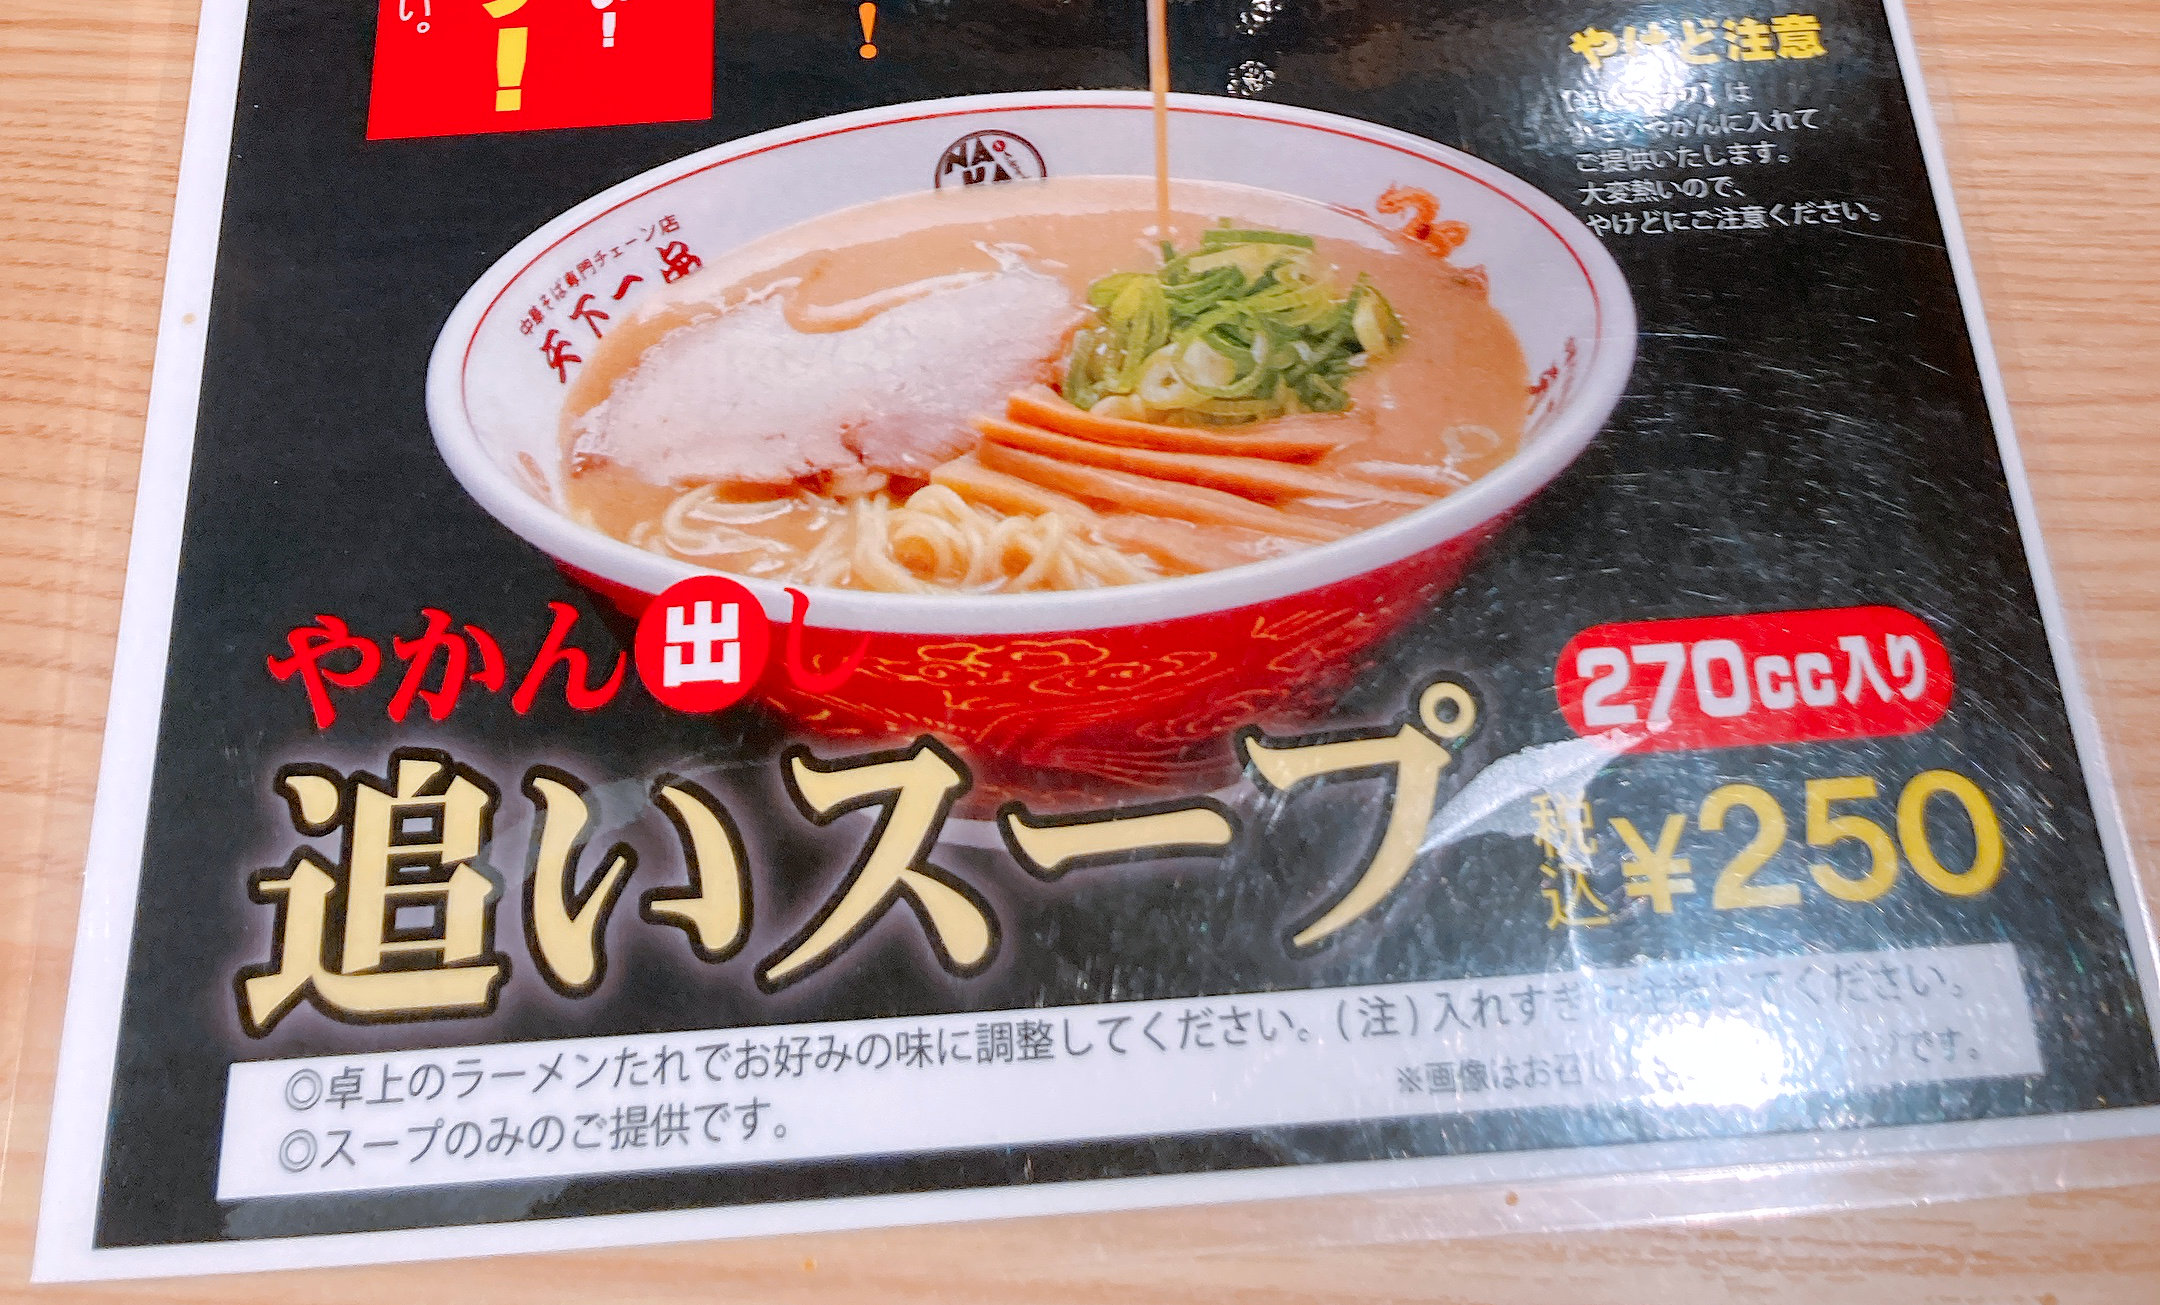 天下一品 こってりスープだけを追加注文できる 追いスープ が登場 やかんで出てくるぞ 東京 中野 ロケットニュース24